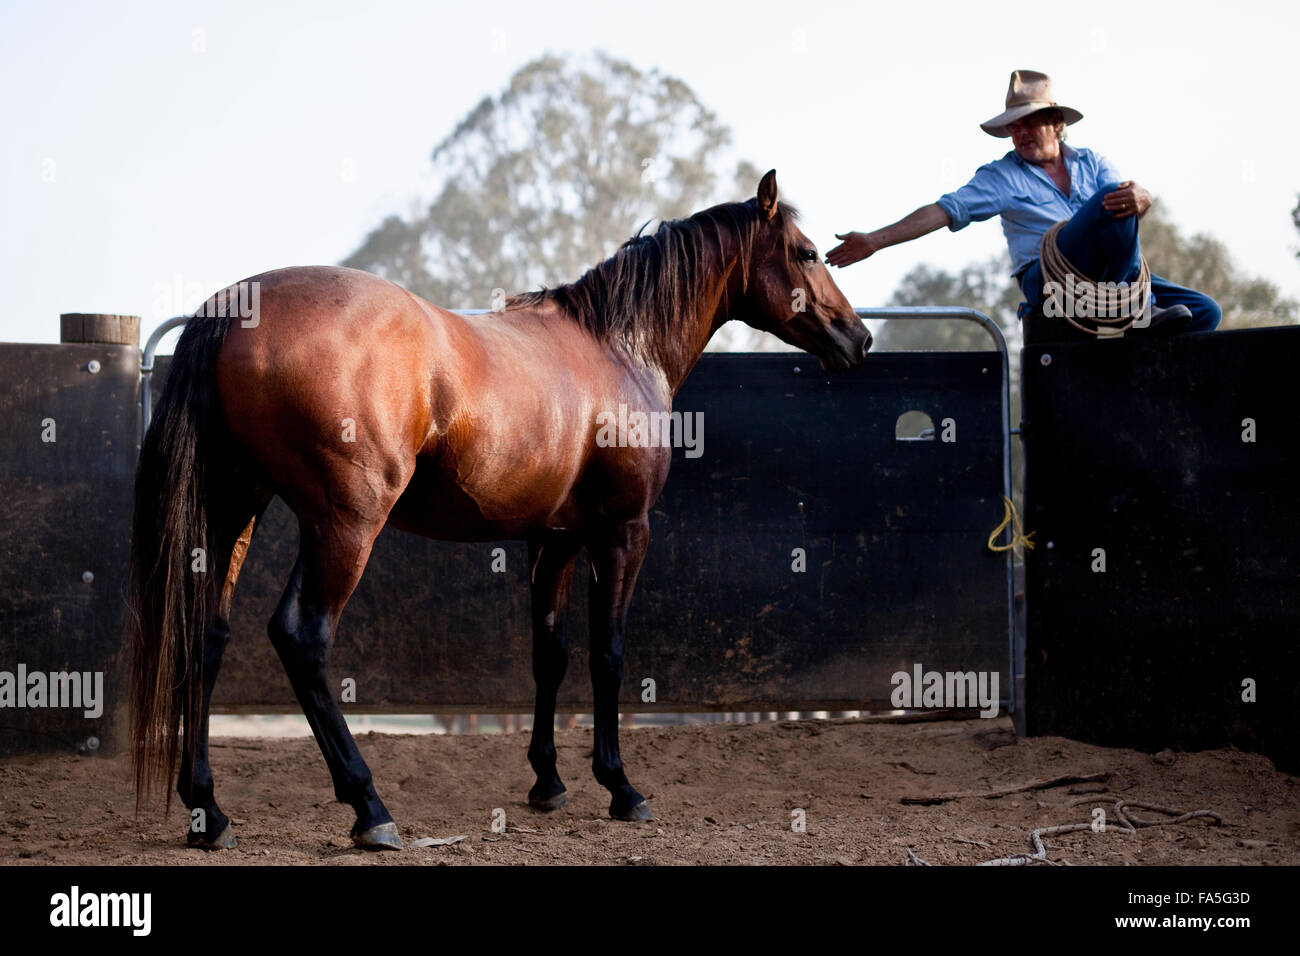 Steve Baird Bogong Pferd Abenteuer Ausbildung ein Hengstfohlen Australian Stock Horse auf dem runden Hof im Frühjahr Sporn. Stockfoto